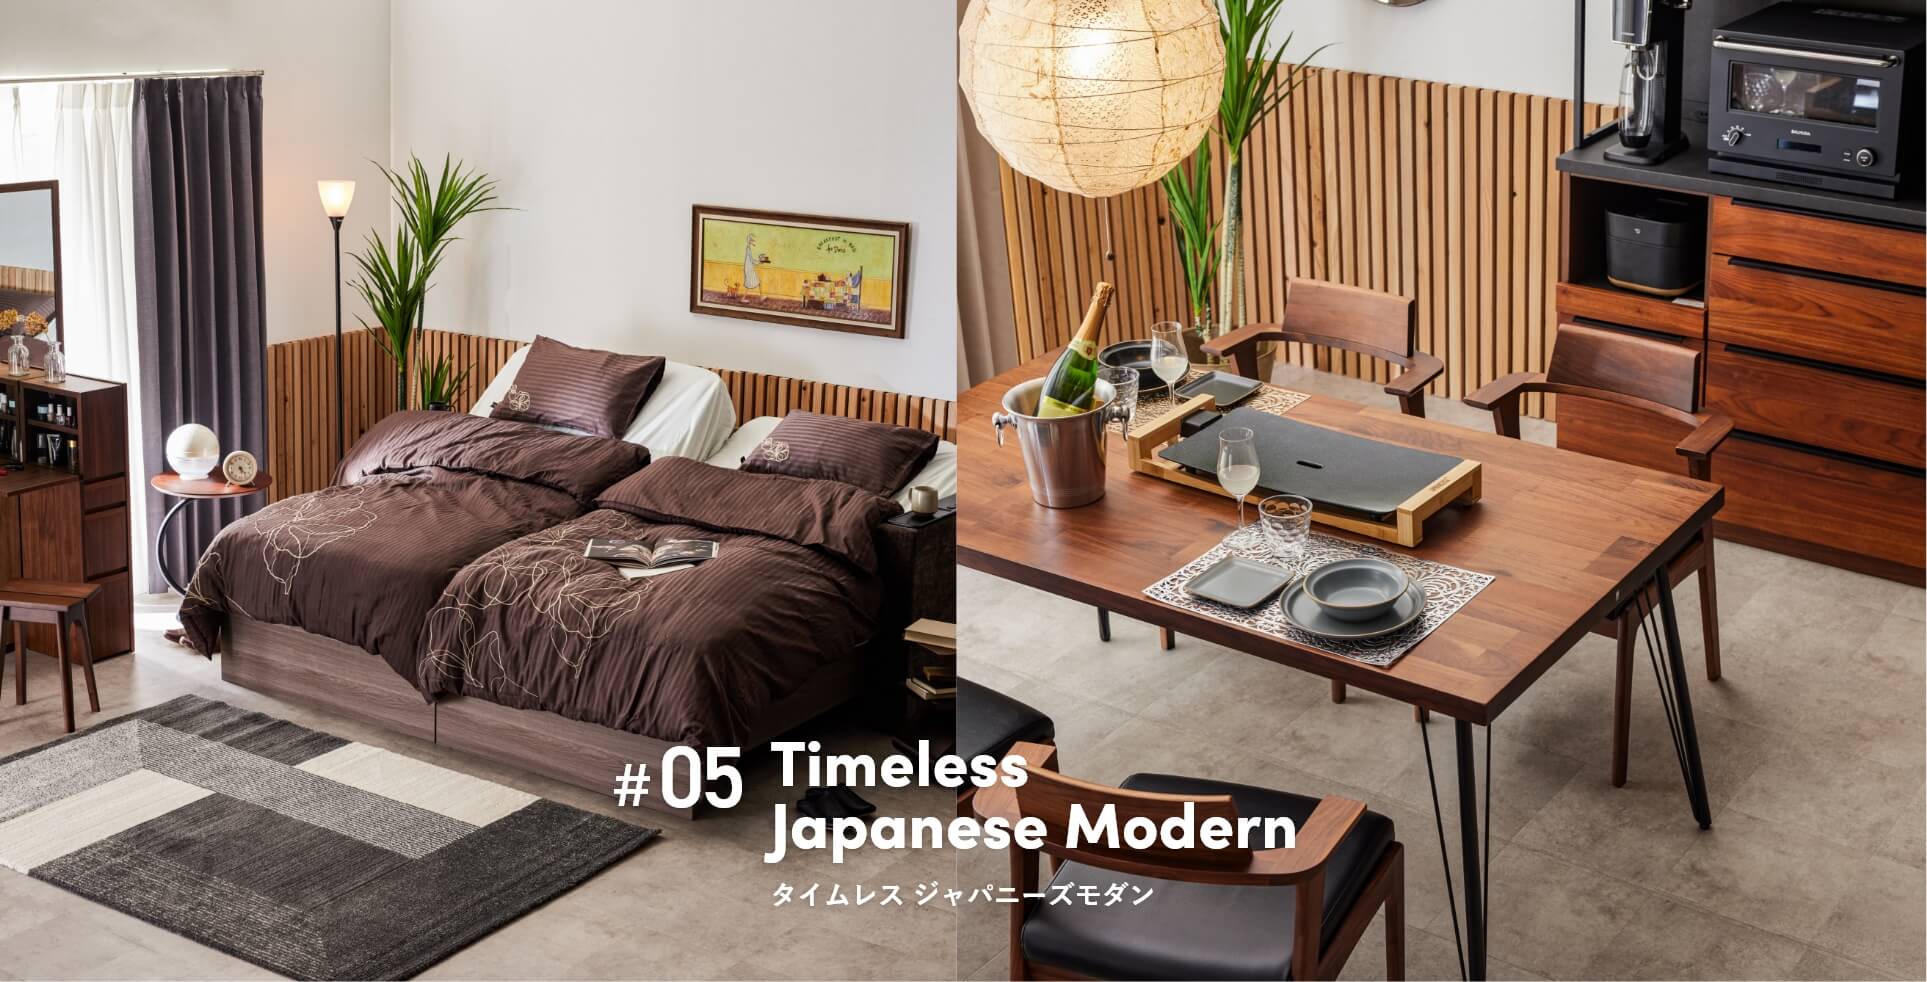 Timeless Japanese Modern